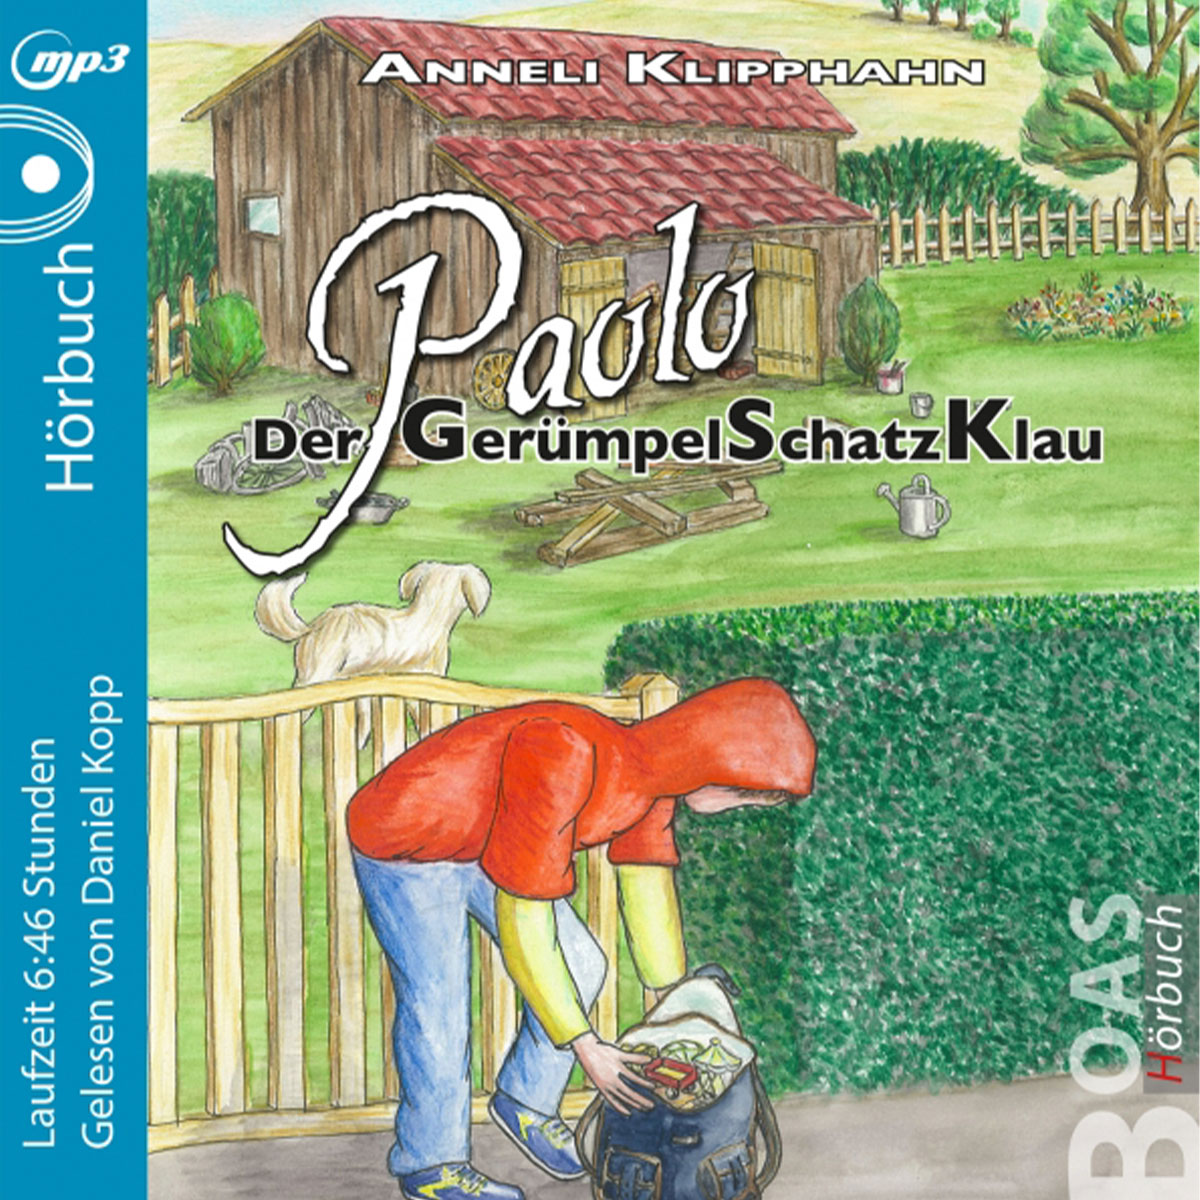 Paolo - Der GerümpelSchatzKlau - MP3 Hörbuch